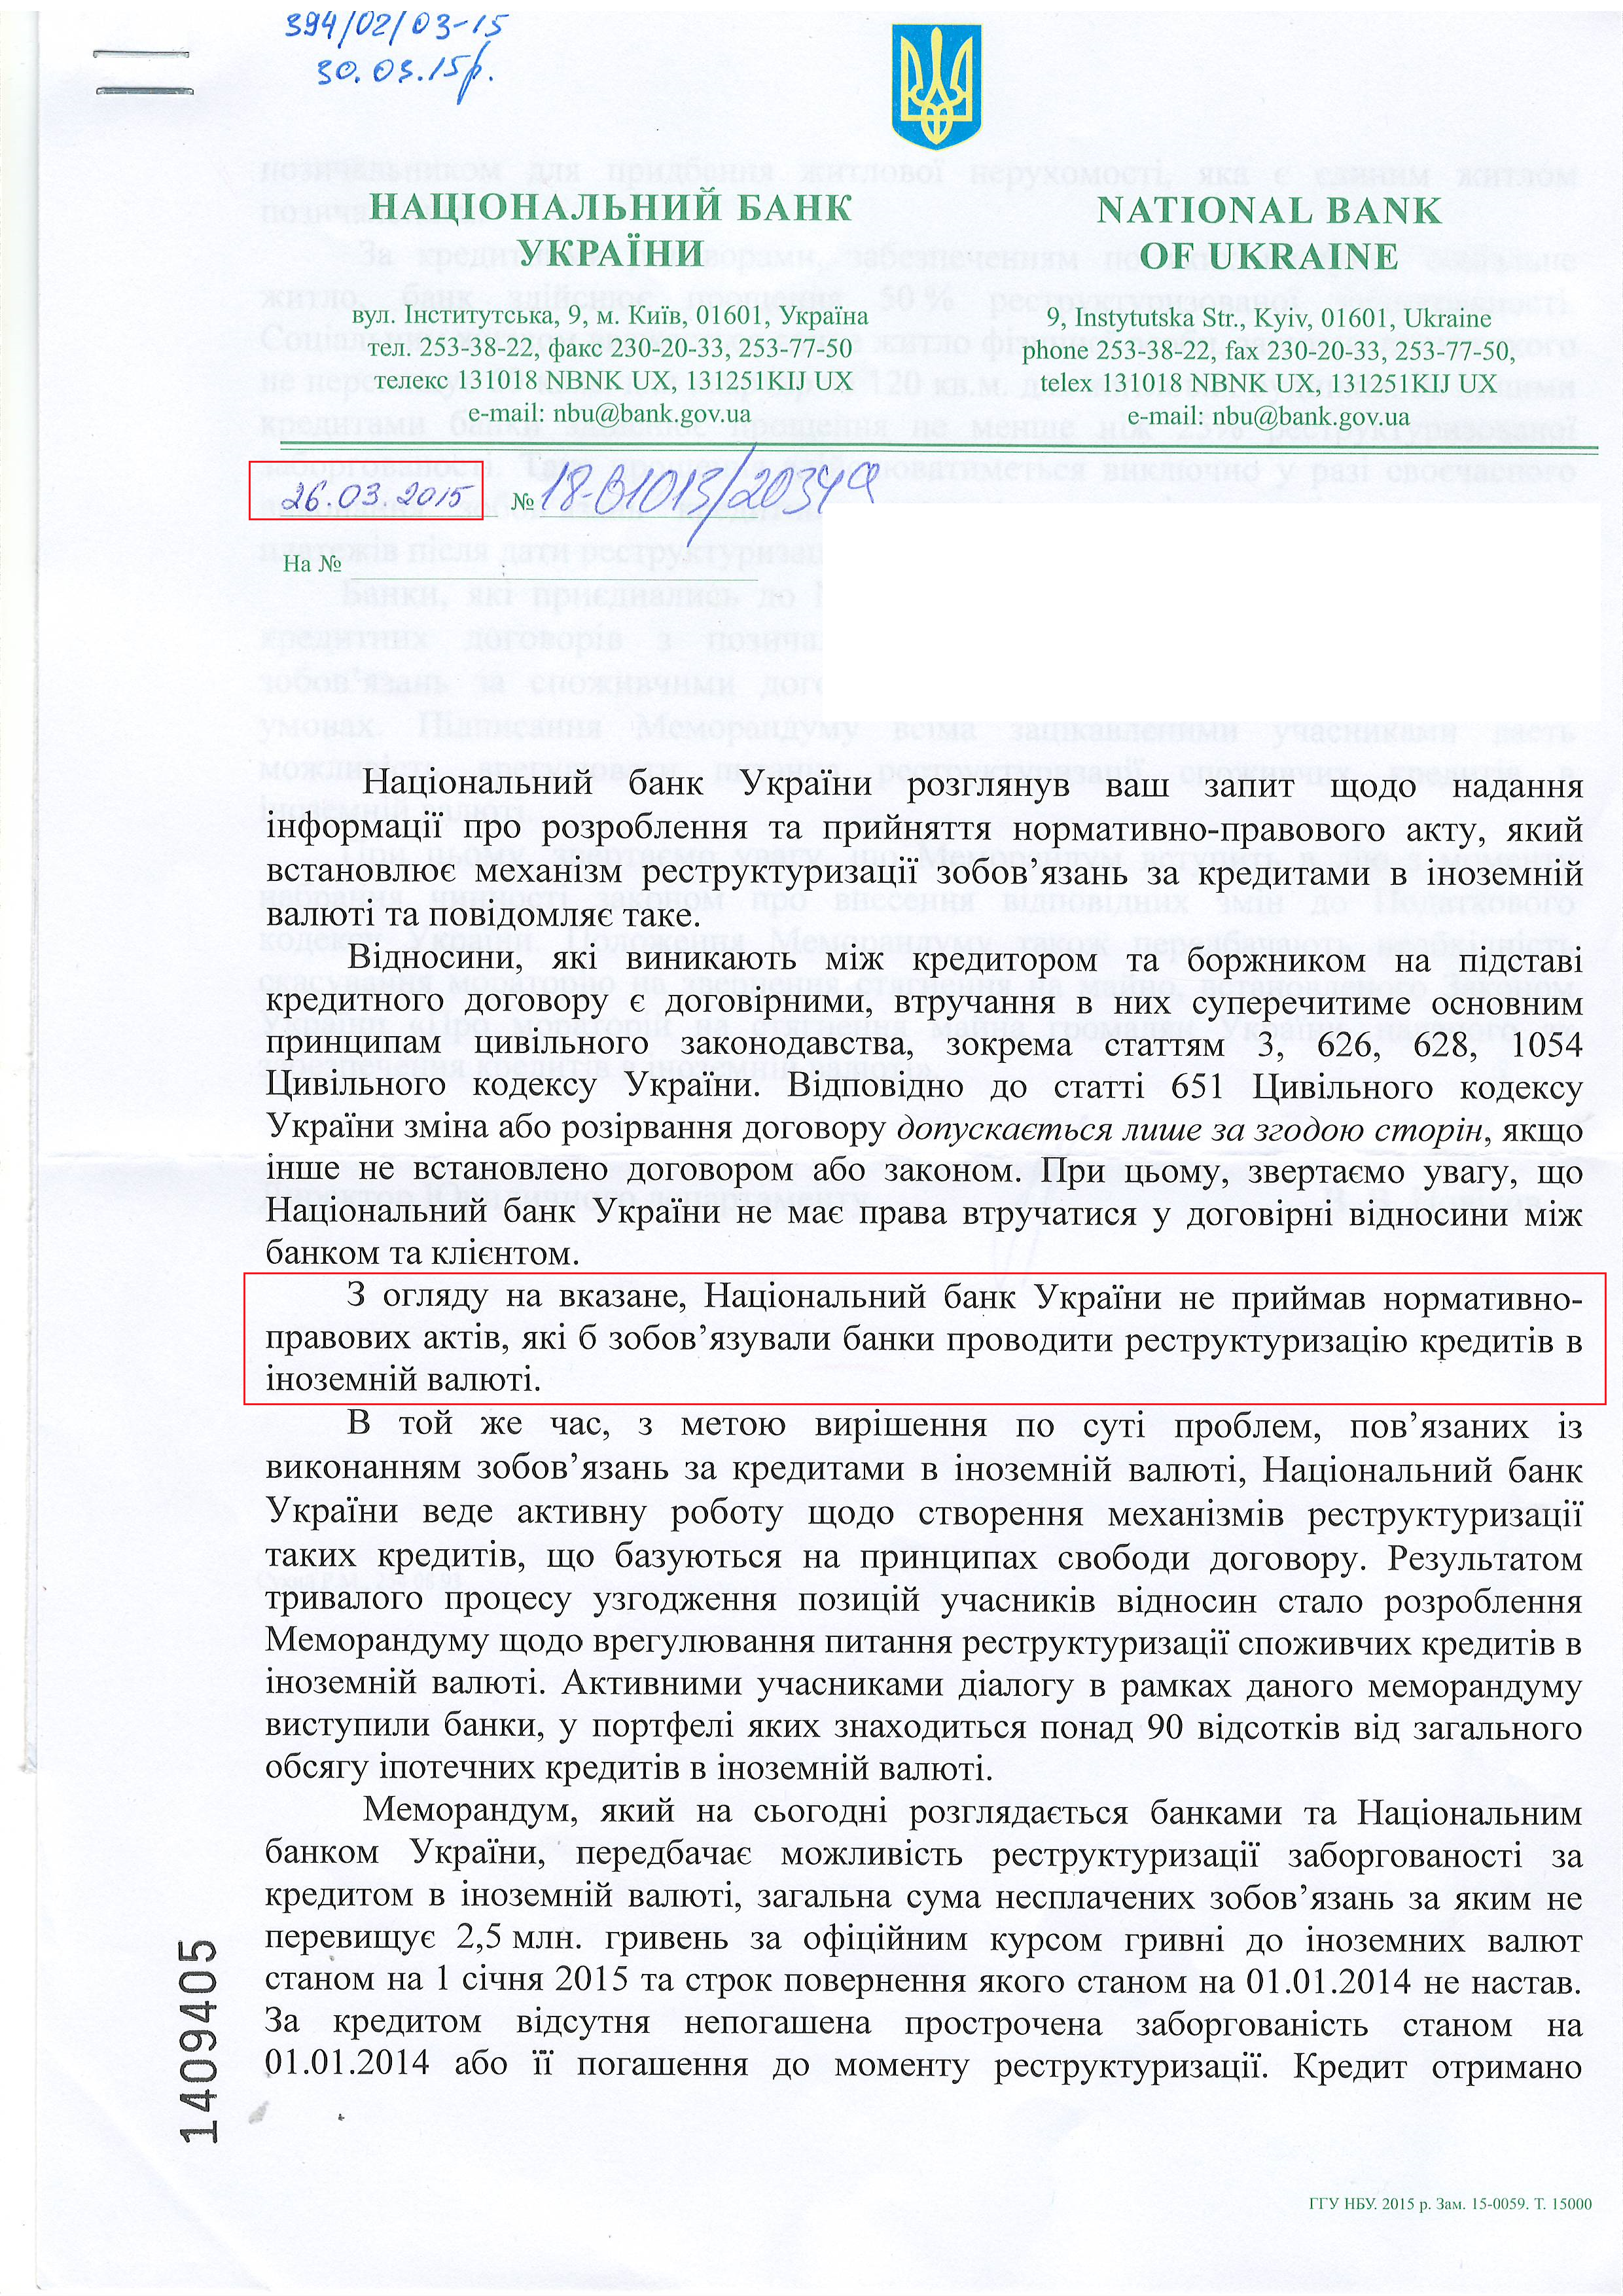 Лист Національного банку України від 26 березня 2015 року